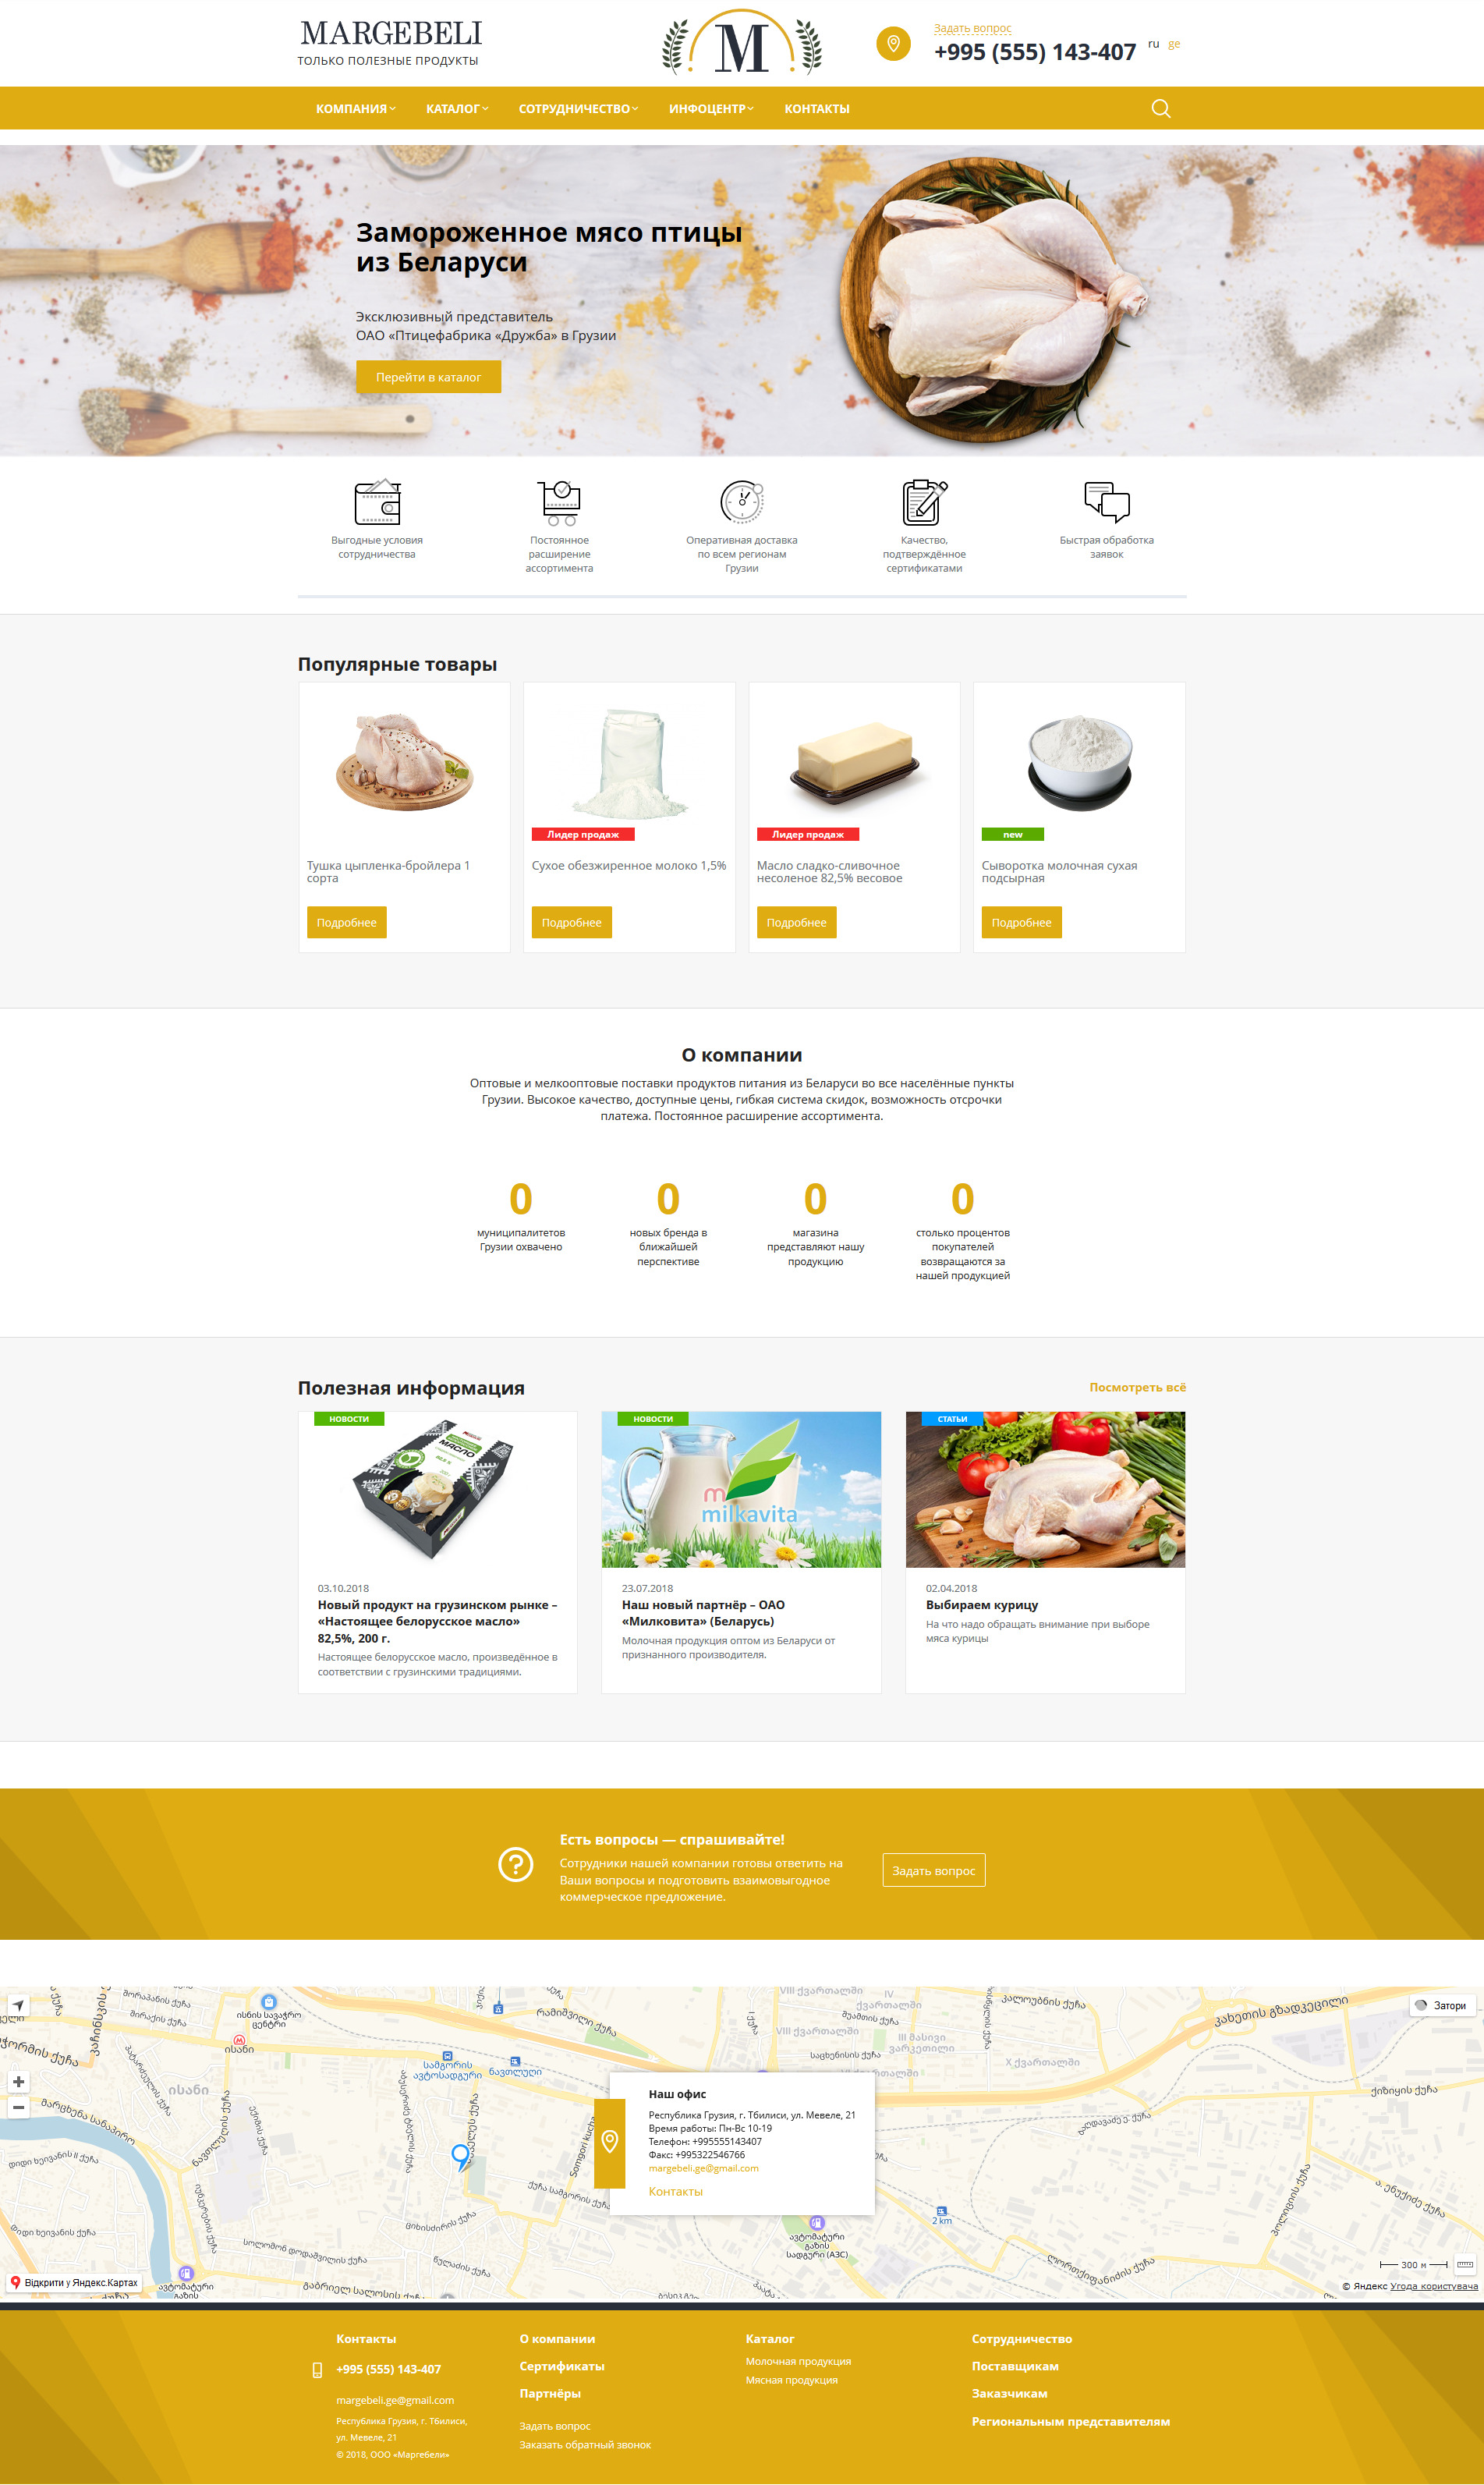 Разработка Корпоративного сайта для поставщика продуктов питания из РБ